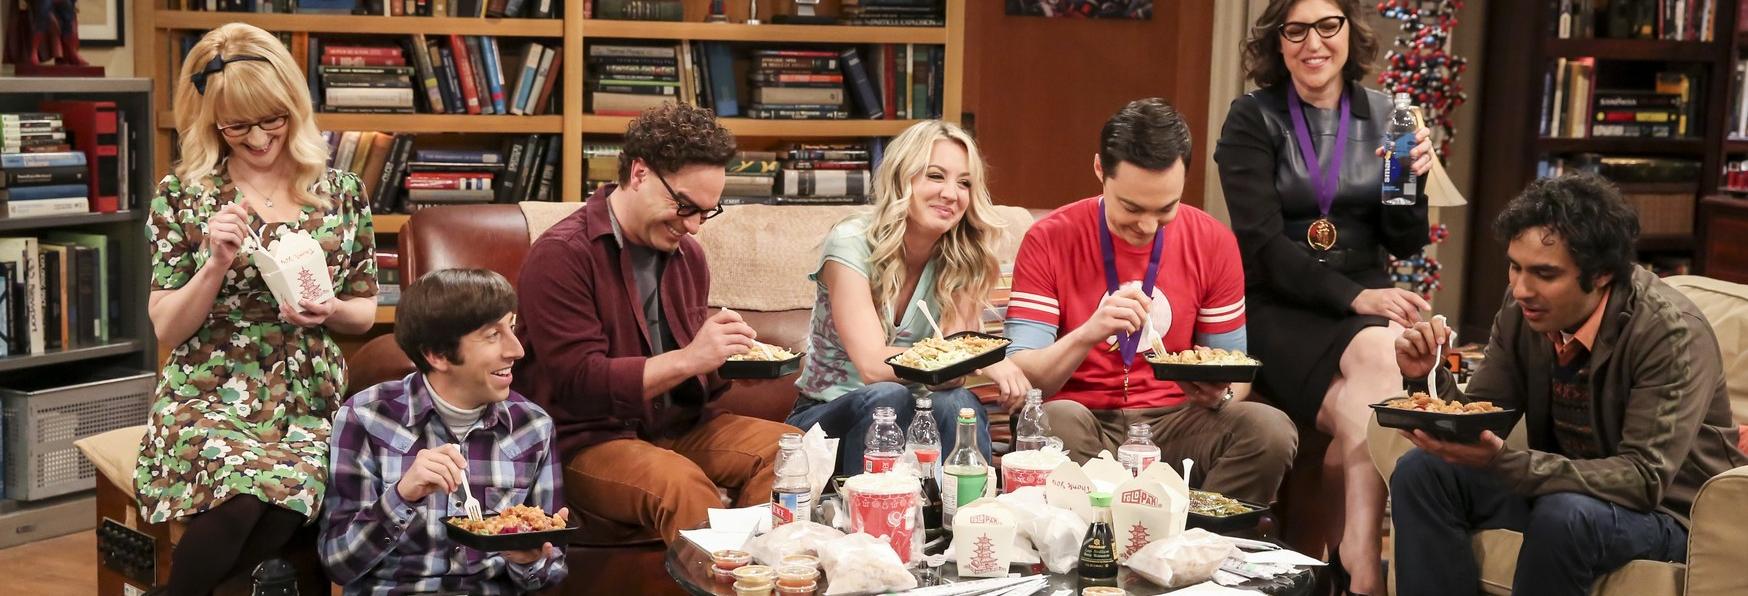 Esperienze Seriali: il Mio Addio a The Big Bang Theory, un Commento sul Finale